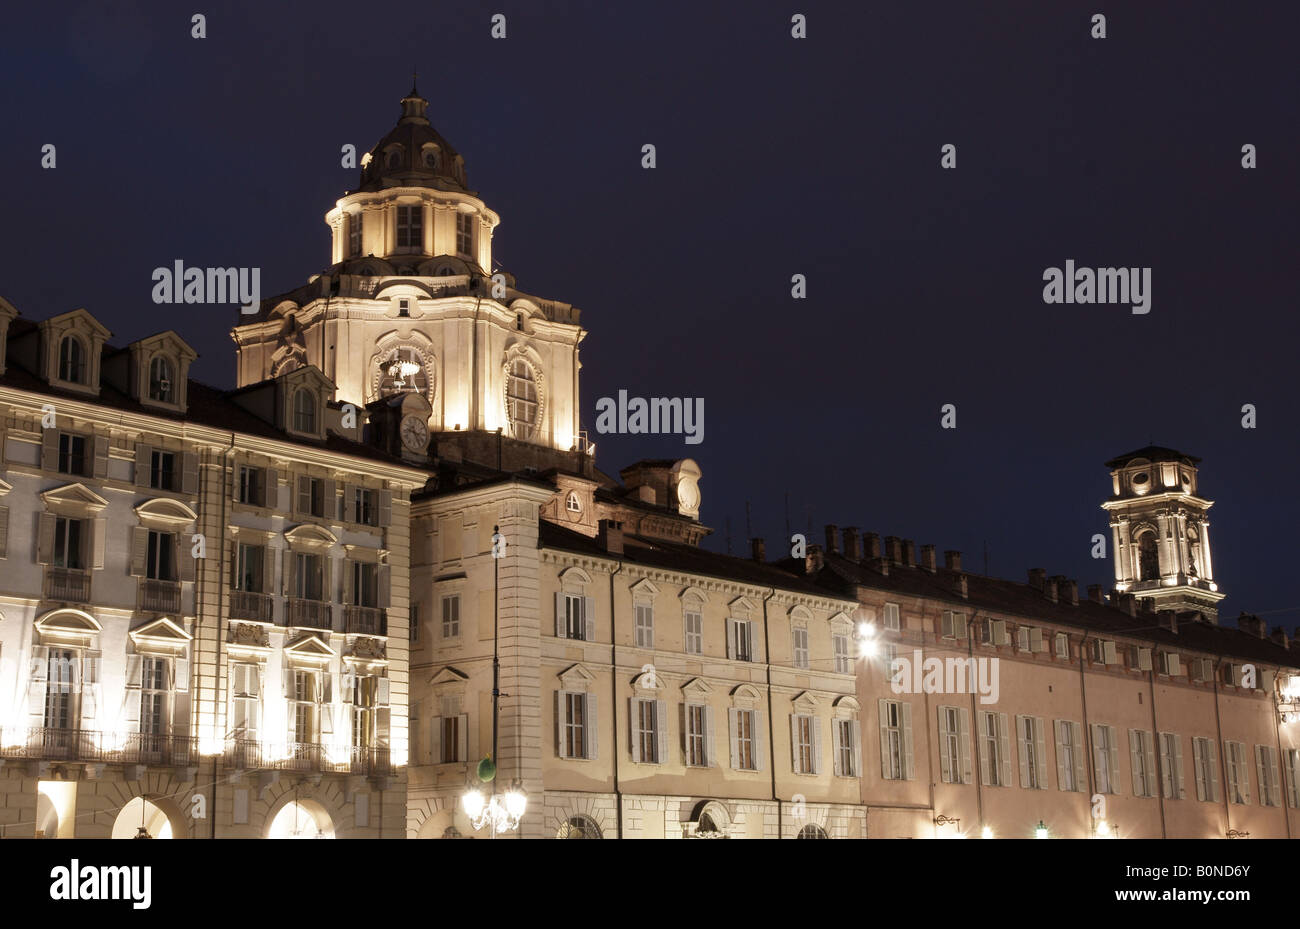 Castello square portico and Guarini dome at night. Stock Photo